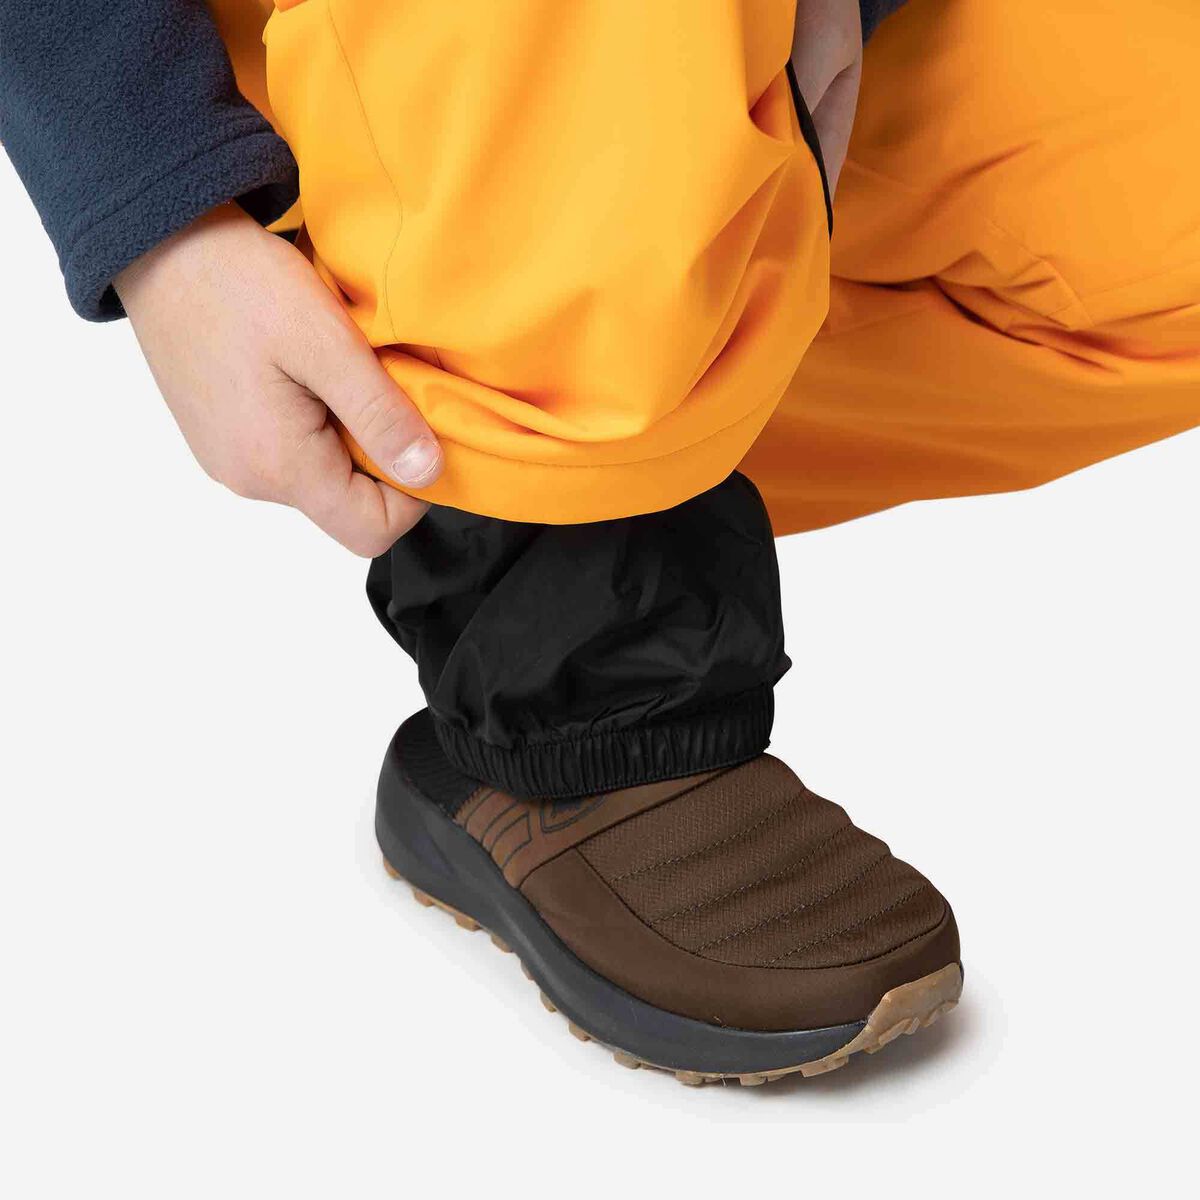 Rossignol Pantalon de ski garçon orange